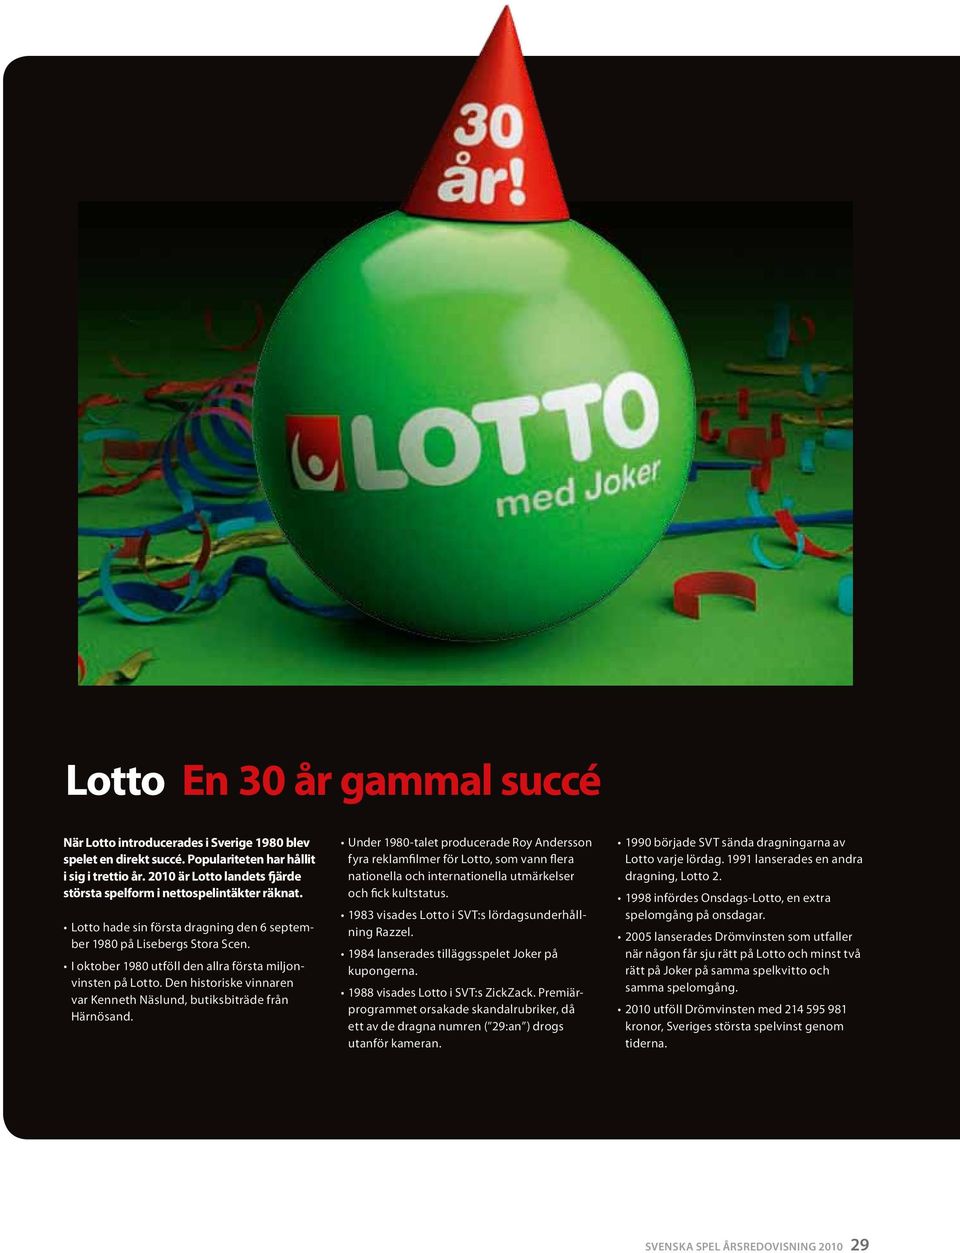 I oktober 1980 utföll den allra första miljonvinsten på Lotto. Den historiske vinnaren var Kenneth Näslund, butiksbiträde från Härnösand.